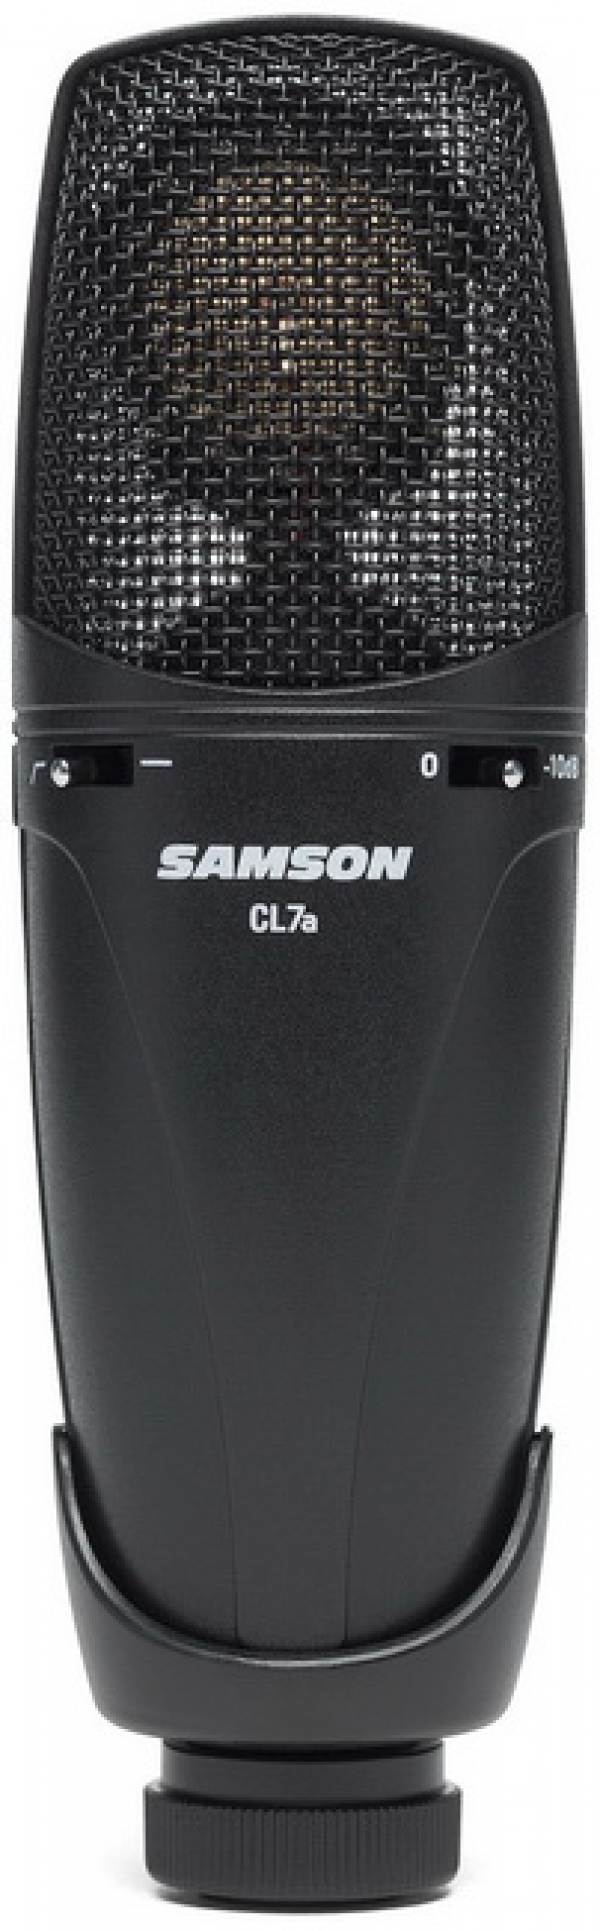 Samson CL7a – универсальный конденсаторный микрофон